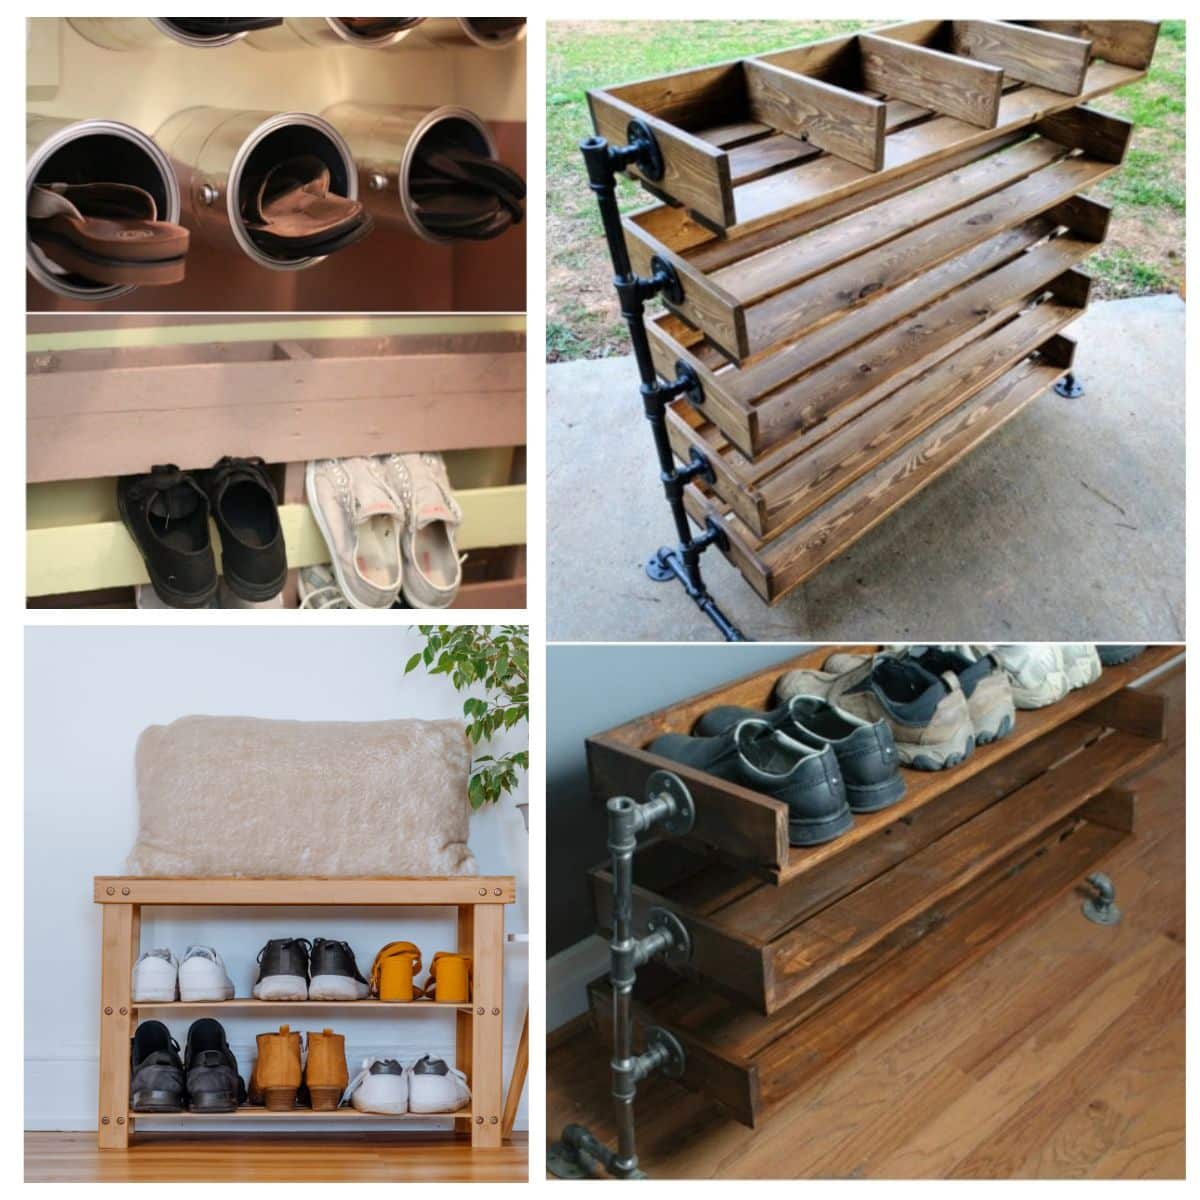 3 Tier Wooden Shoe Shelf - Shoe Storage